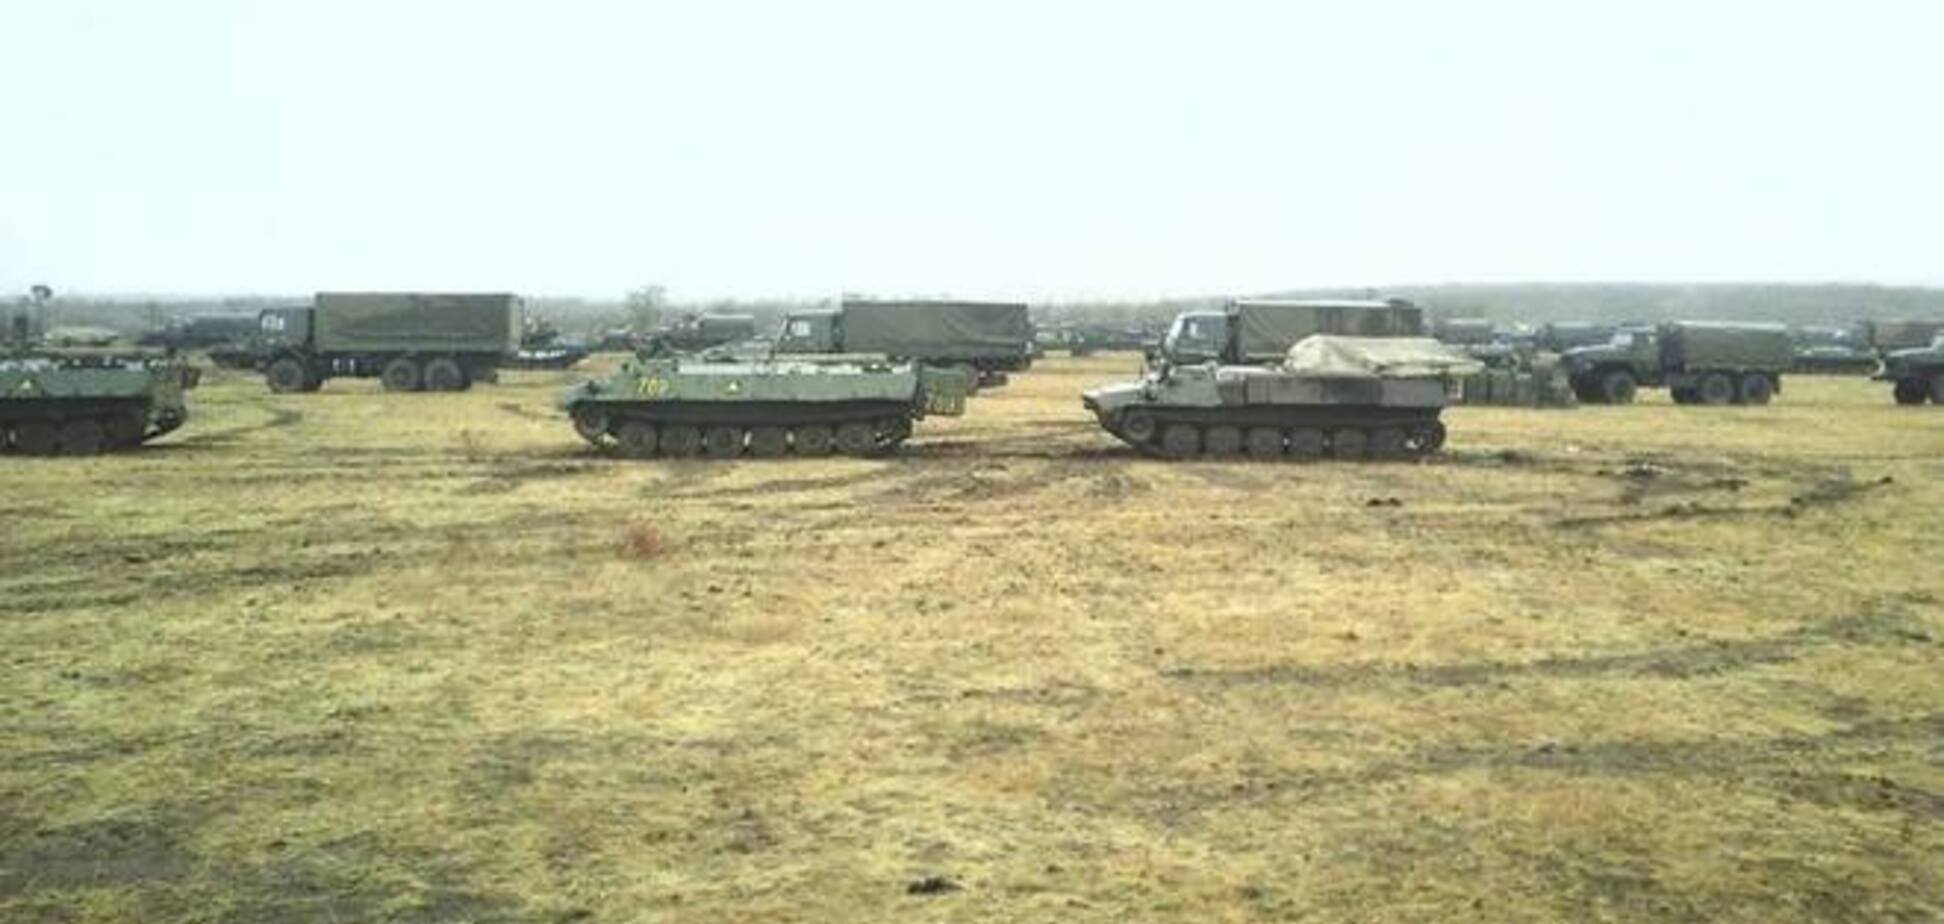 Російські військові знову проникають на територію України: на кордоні йдуть бої